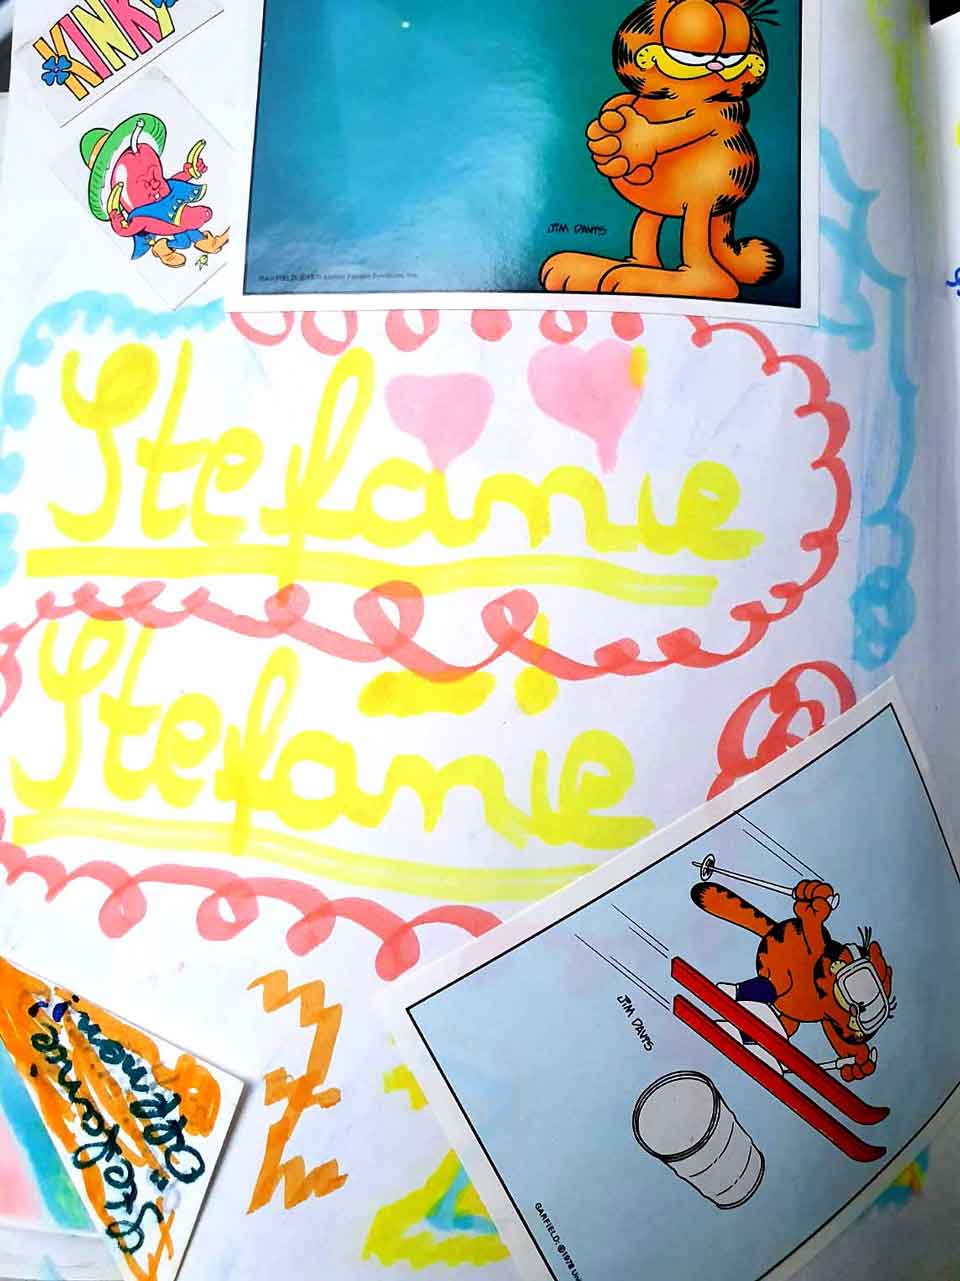 Poesie-Album-Seite mit Stickern von Garfield und dem Schriftzug Stefanie